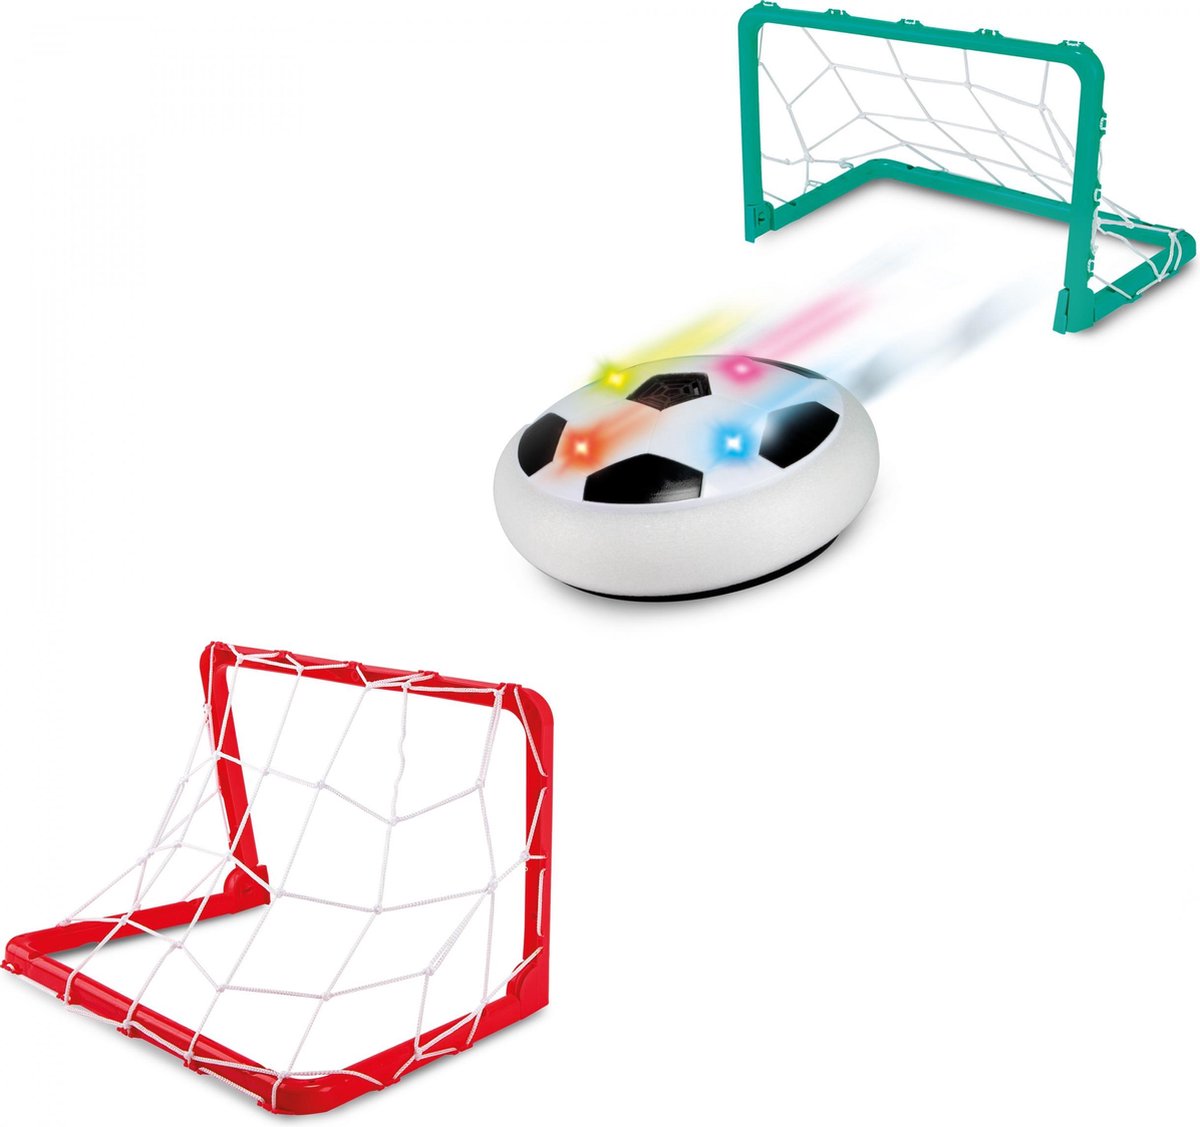 Spel 'Hover Voetbal' schijf met lichteffecten | voetbal | 2 doelen | voetbalspel |binnen voetbal - Toi Toys BV